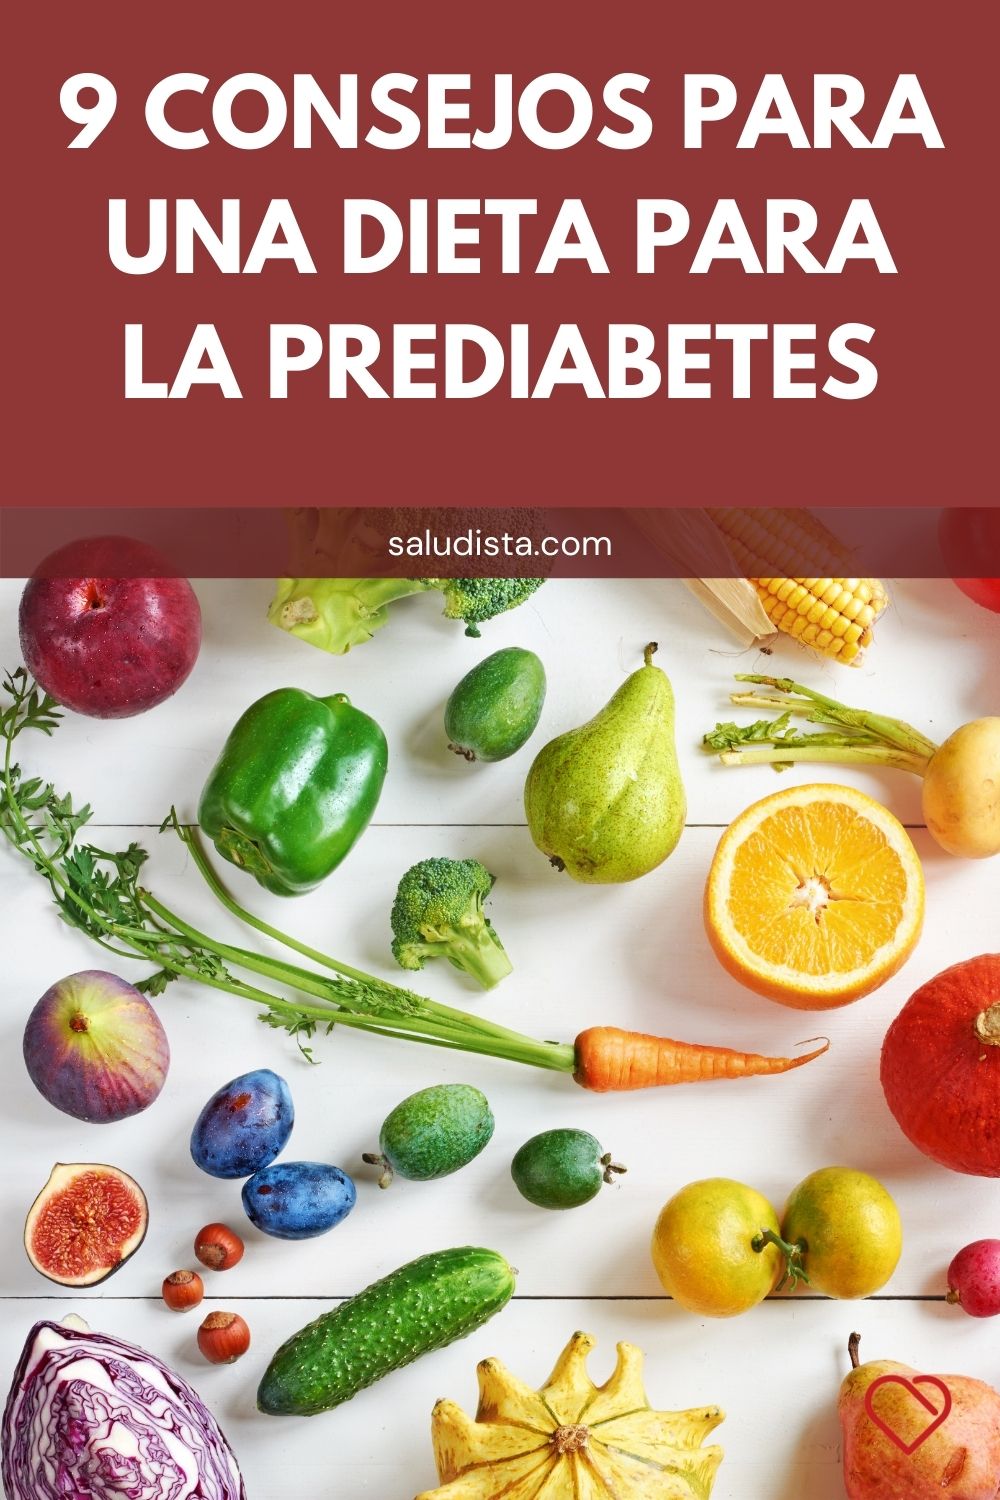 9 Consejos para una dieta para la prediabetes